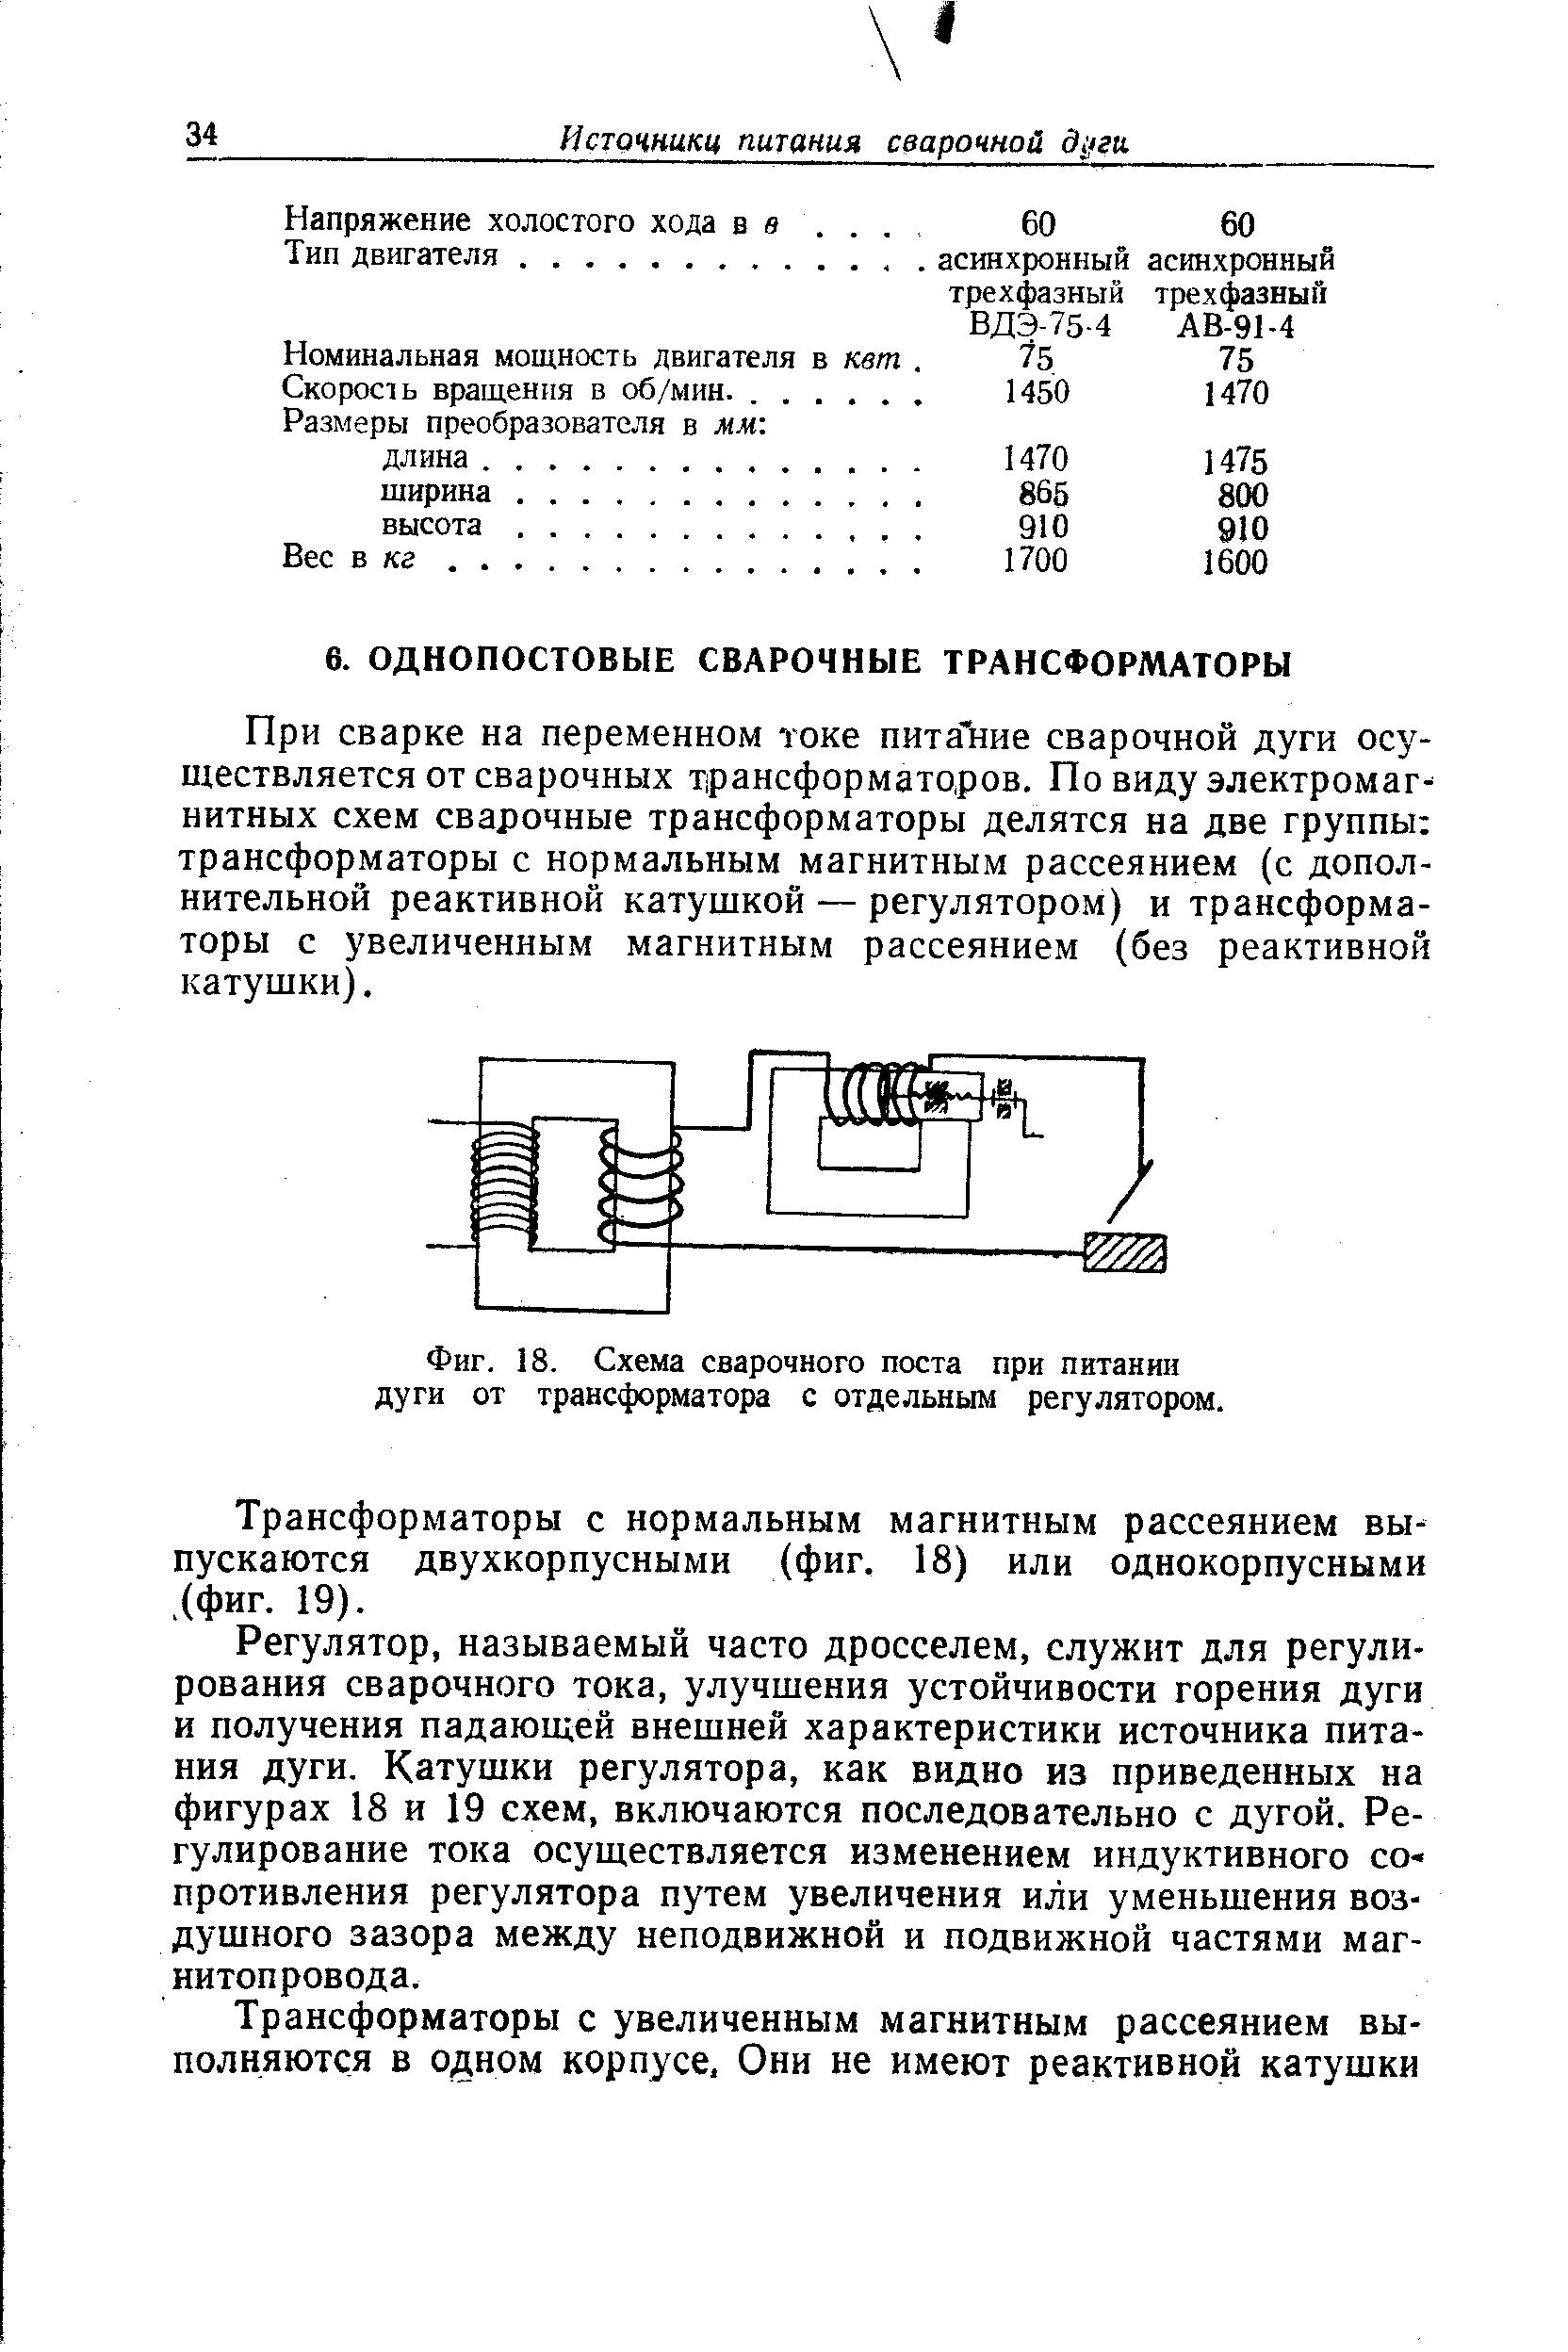 При сварке на переменном токе пита-ние сварочной дуги осуществляется от сварочных трансформаторов. По виду электромагнитных схем сварочные трансформаторы делятся на две группы трансформаторы с нормальным магнитным рассеянием (с дополнительной реактивной катущкой — регулятором) и трансформаторы с увеличенным магнитным рассеянием (без реактивной катушки).
